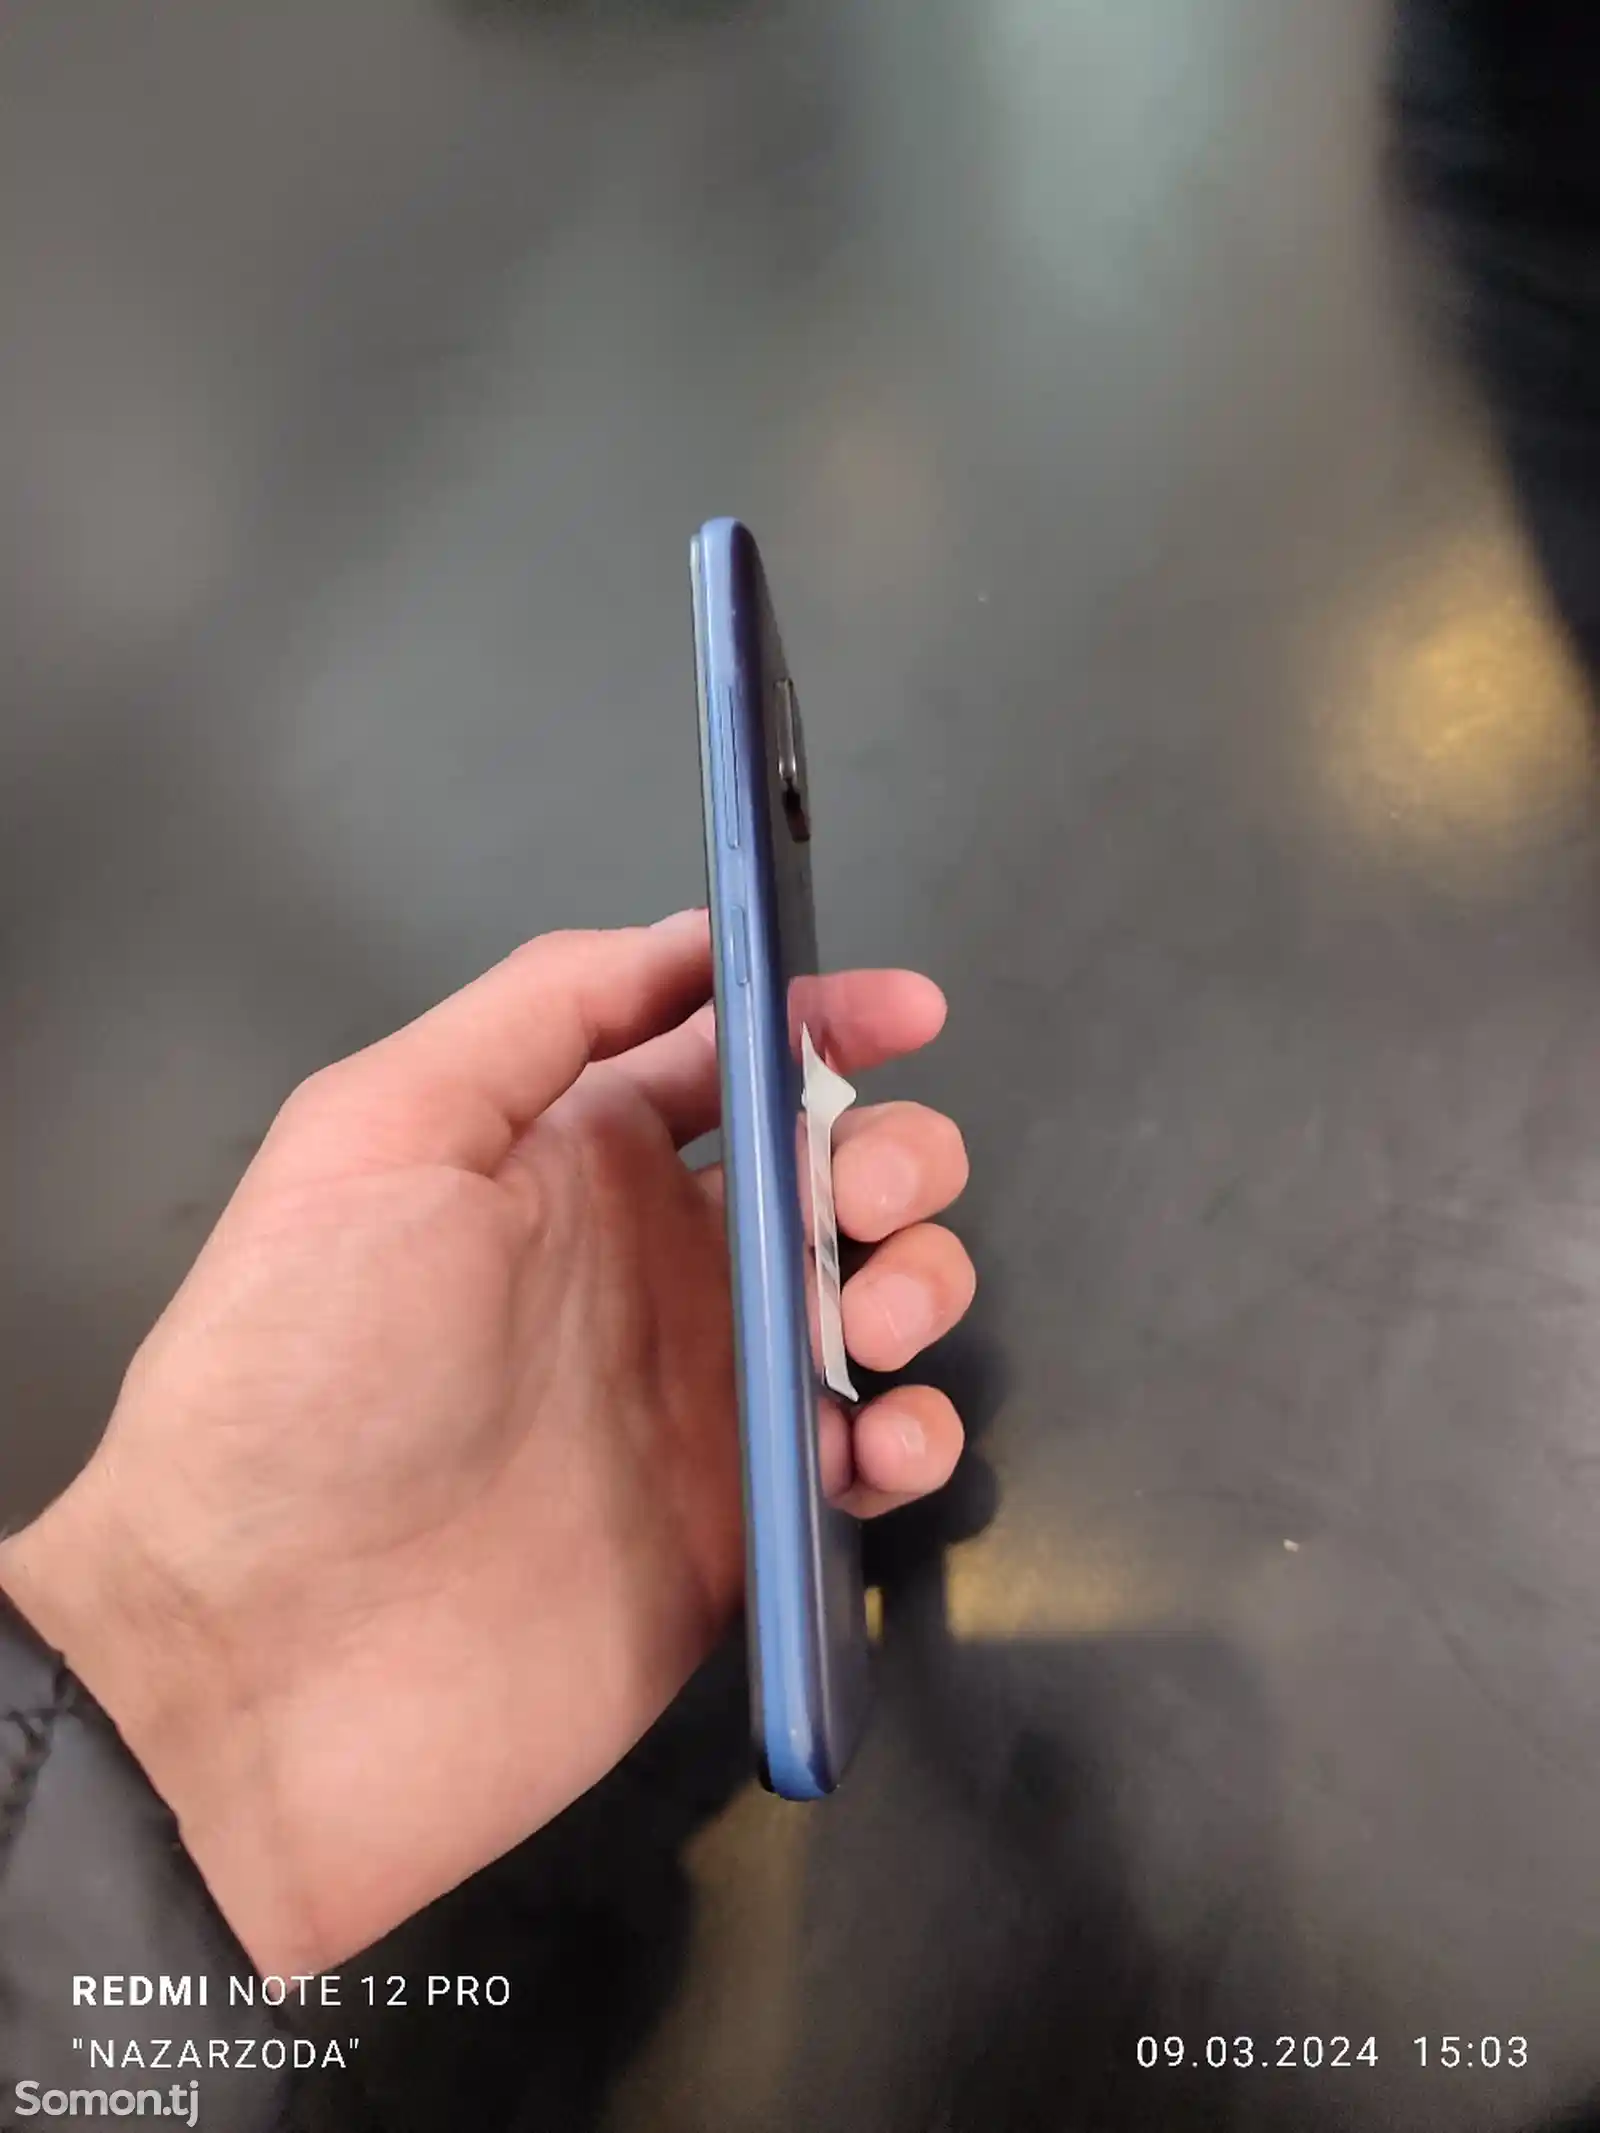 Xiaomi Redmi Note 9-3